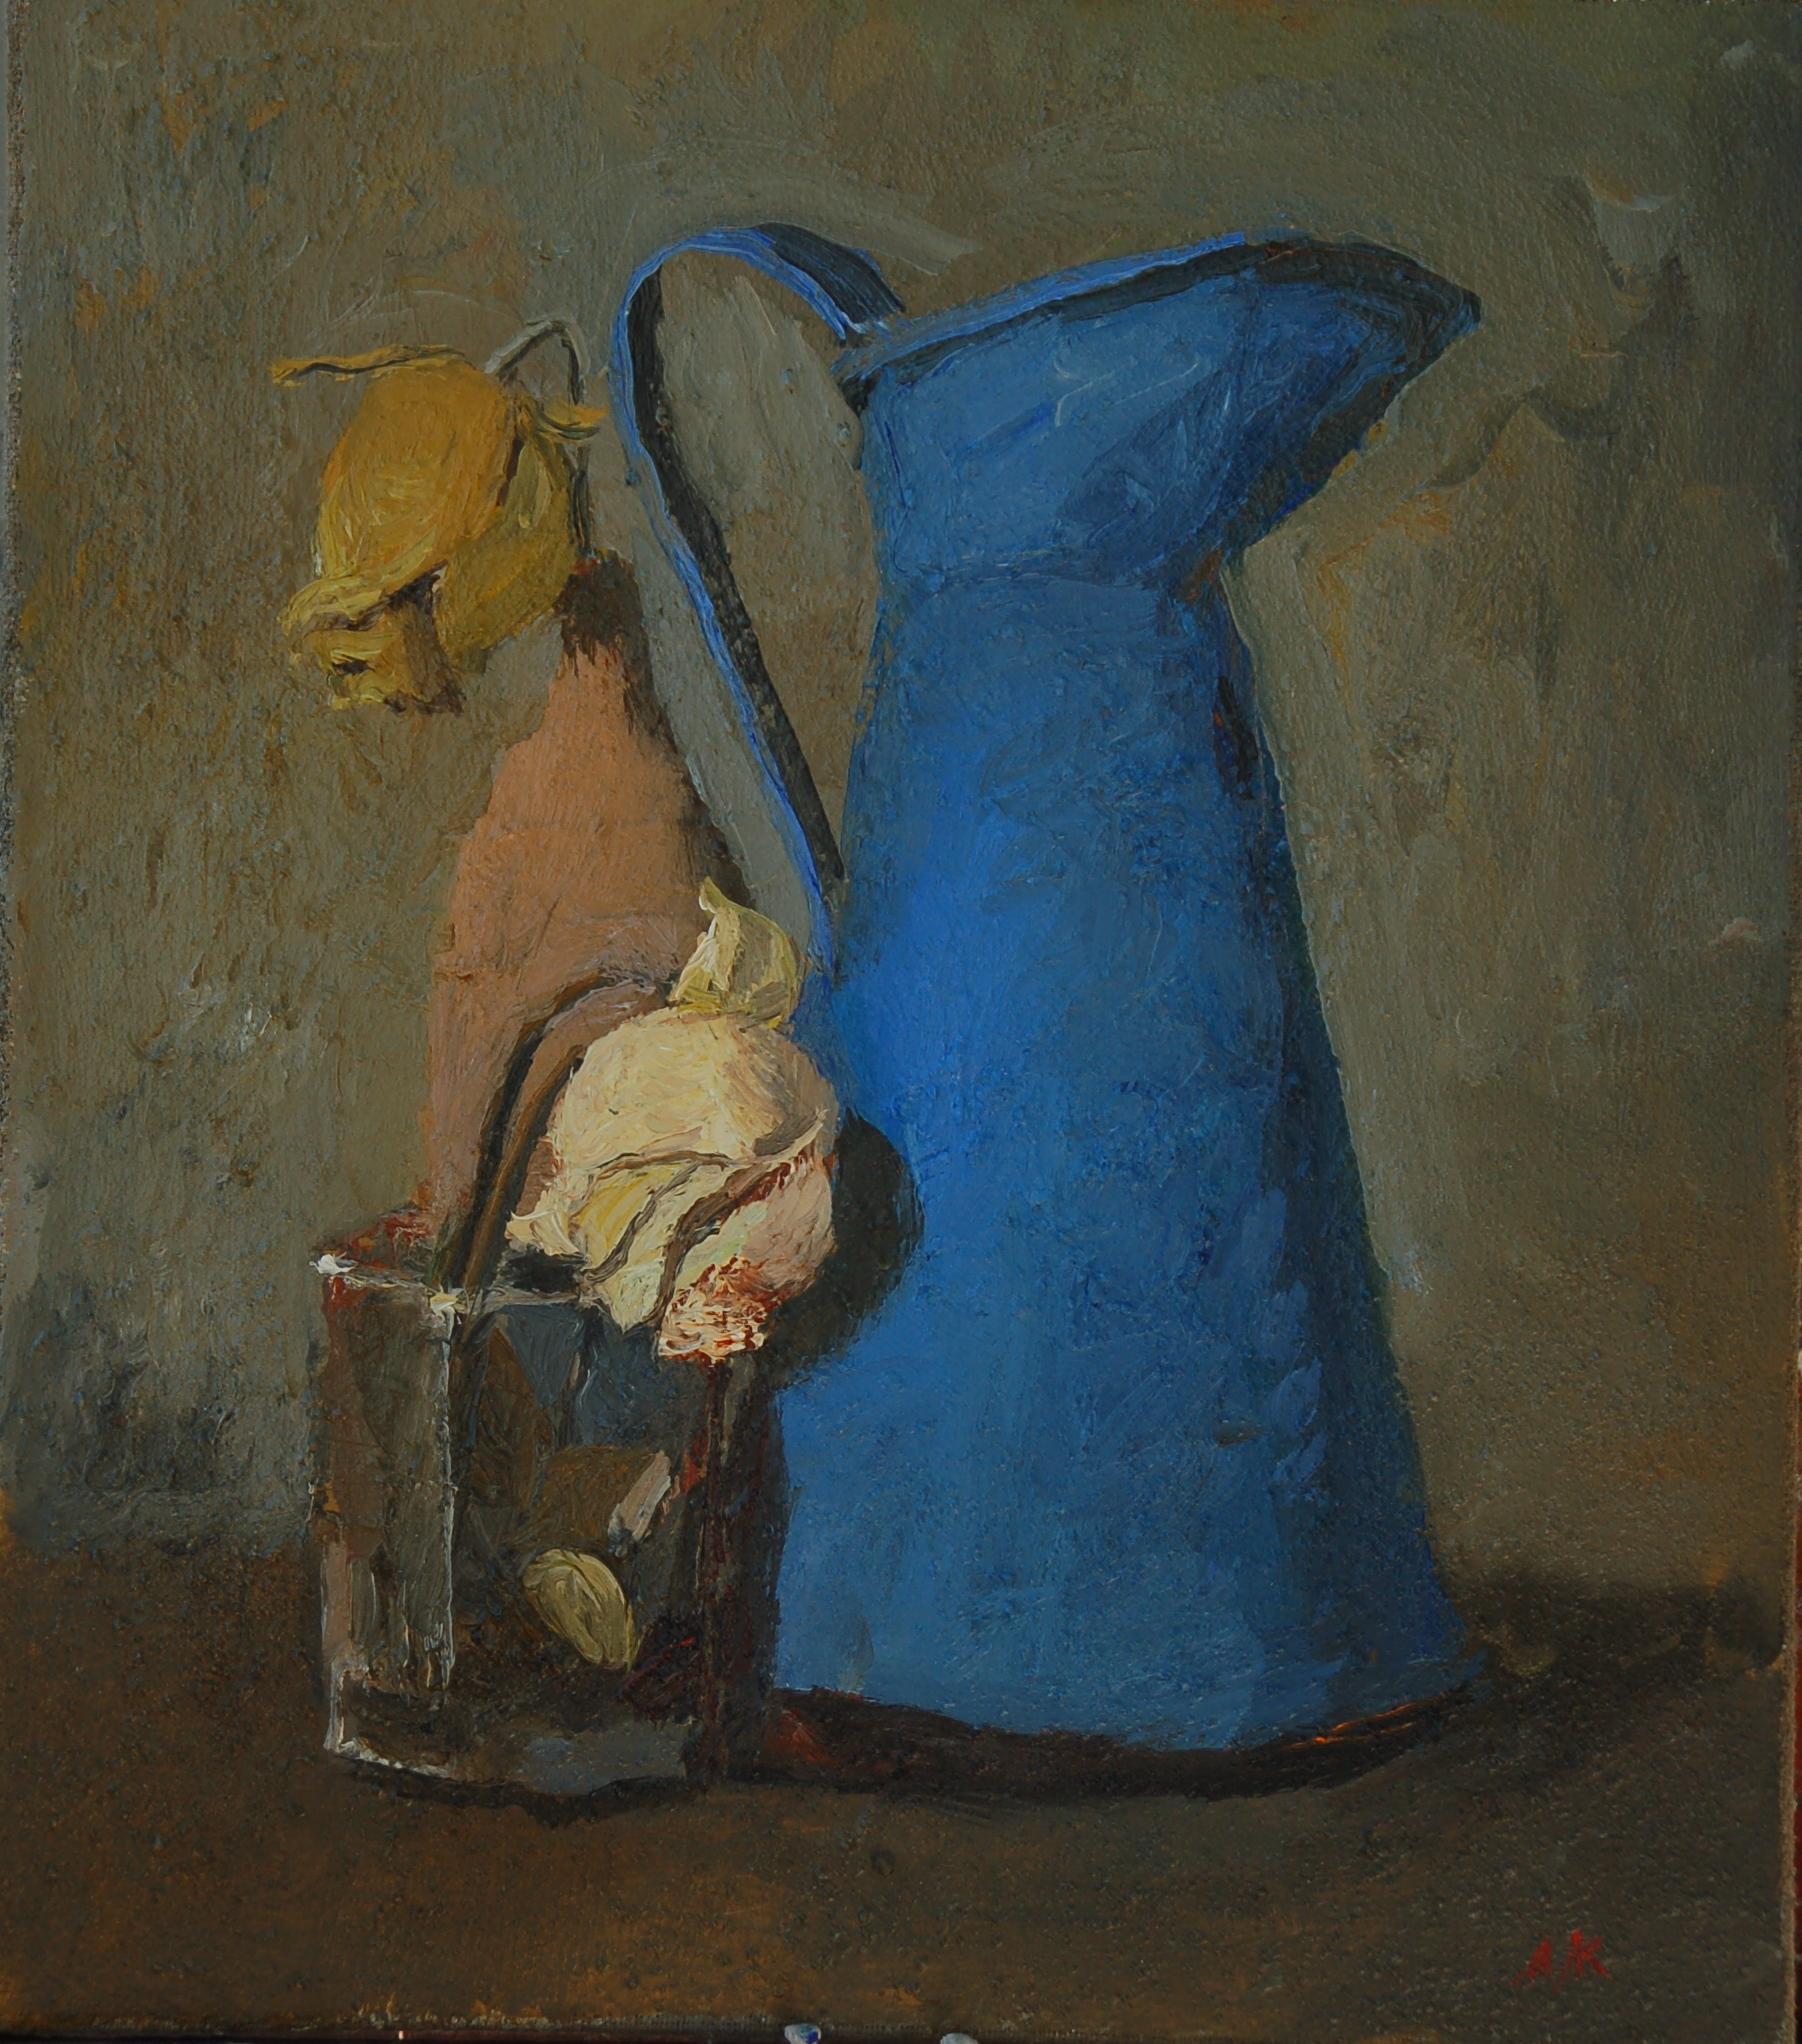 Still life with a blue pitcher. Original modern art painting